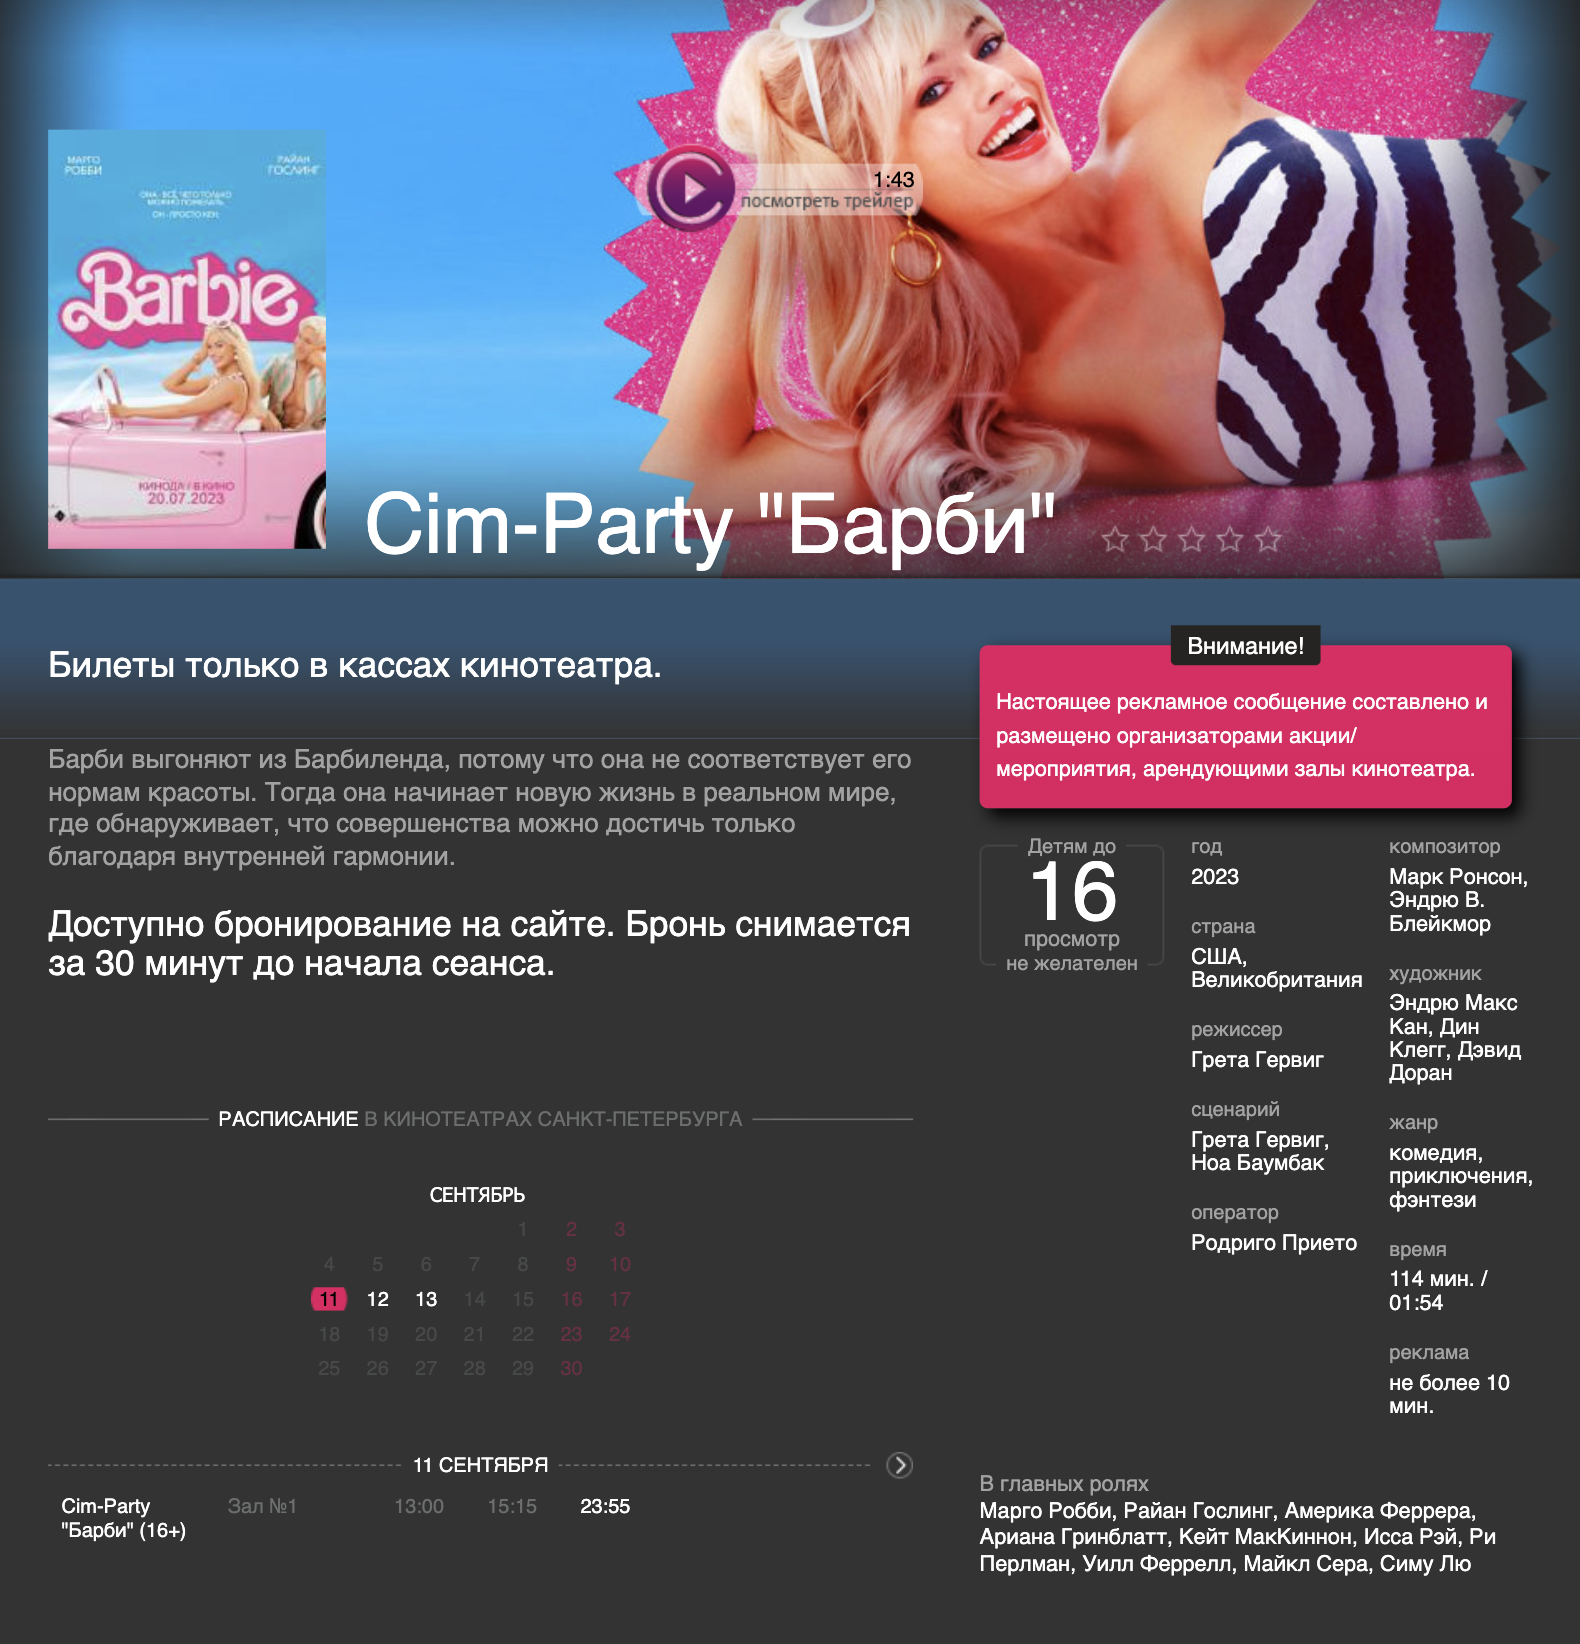 В «Великан-парке» «Барби» показывают в формате Cim⁠-⁠Party. Источник: velikan-park.ru